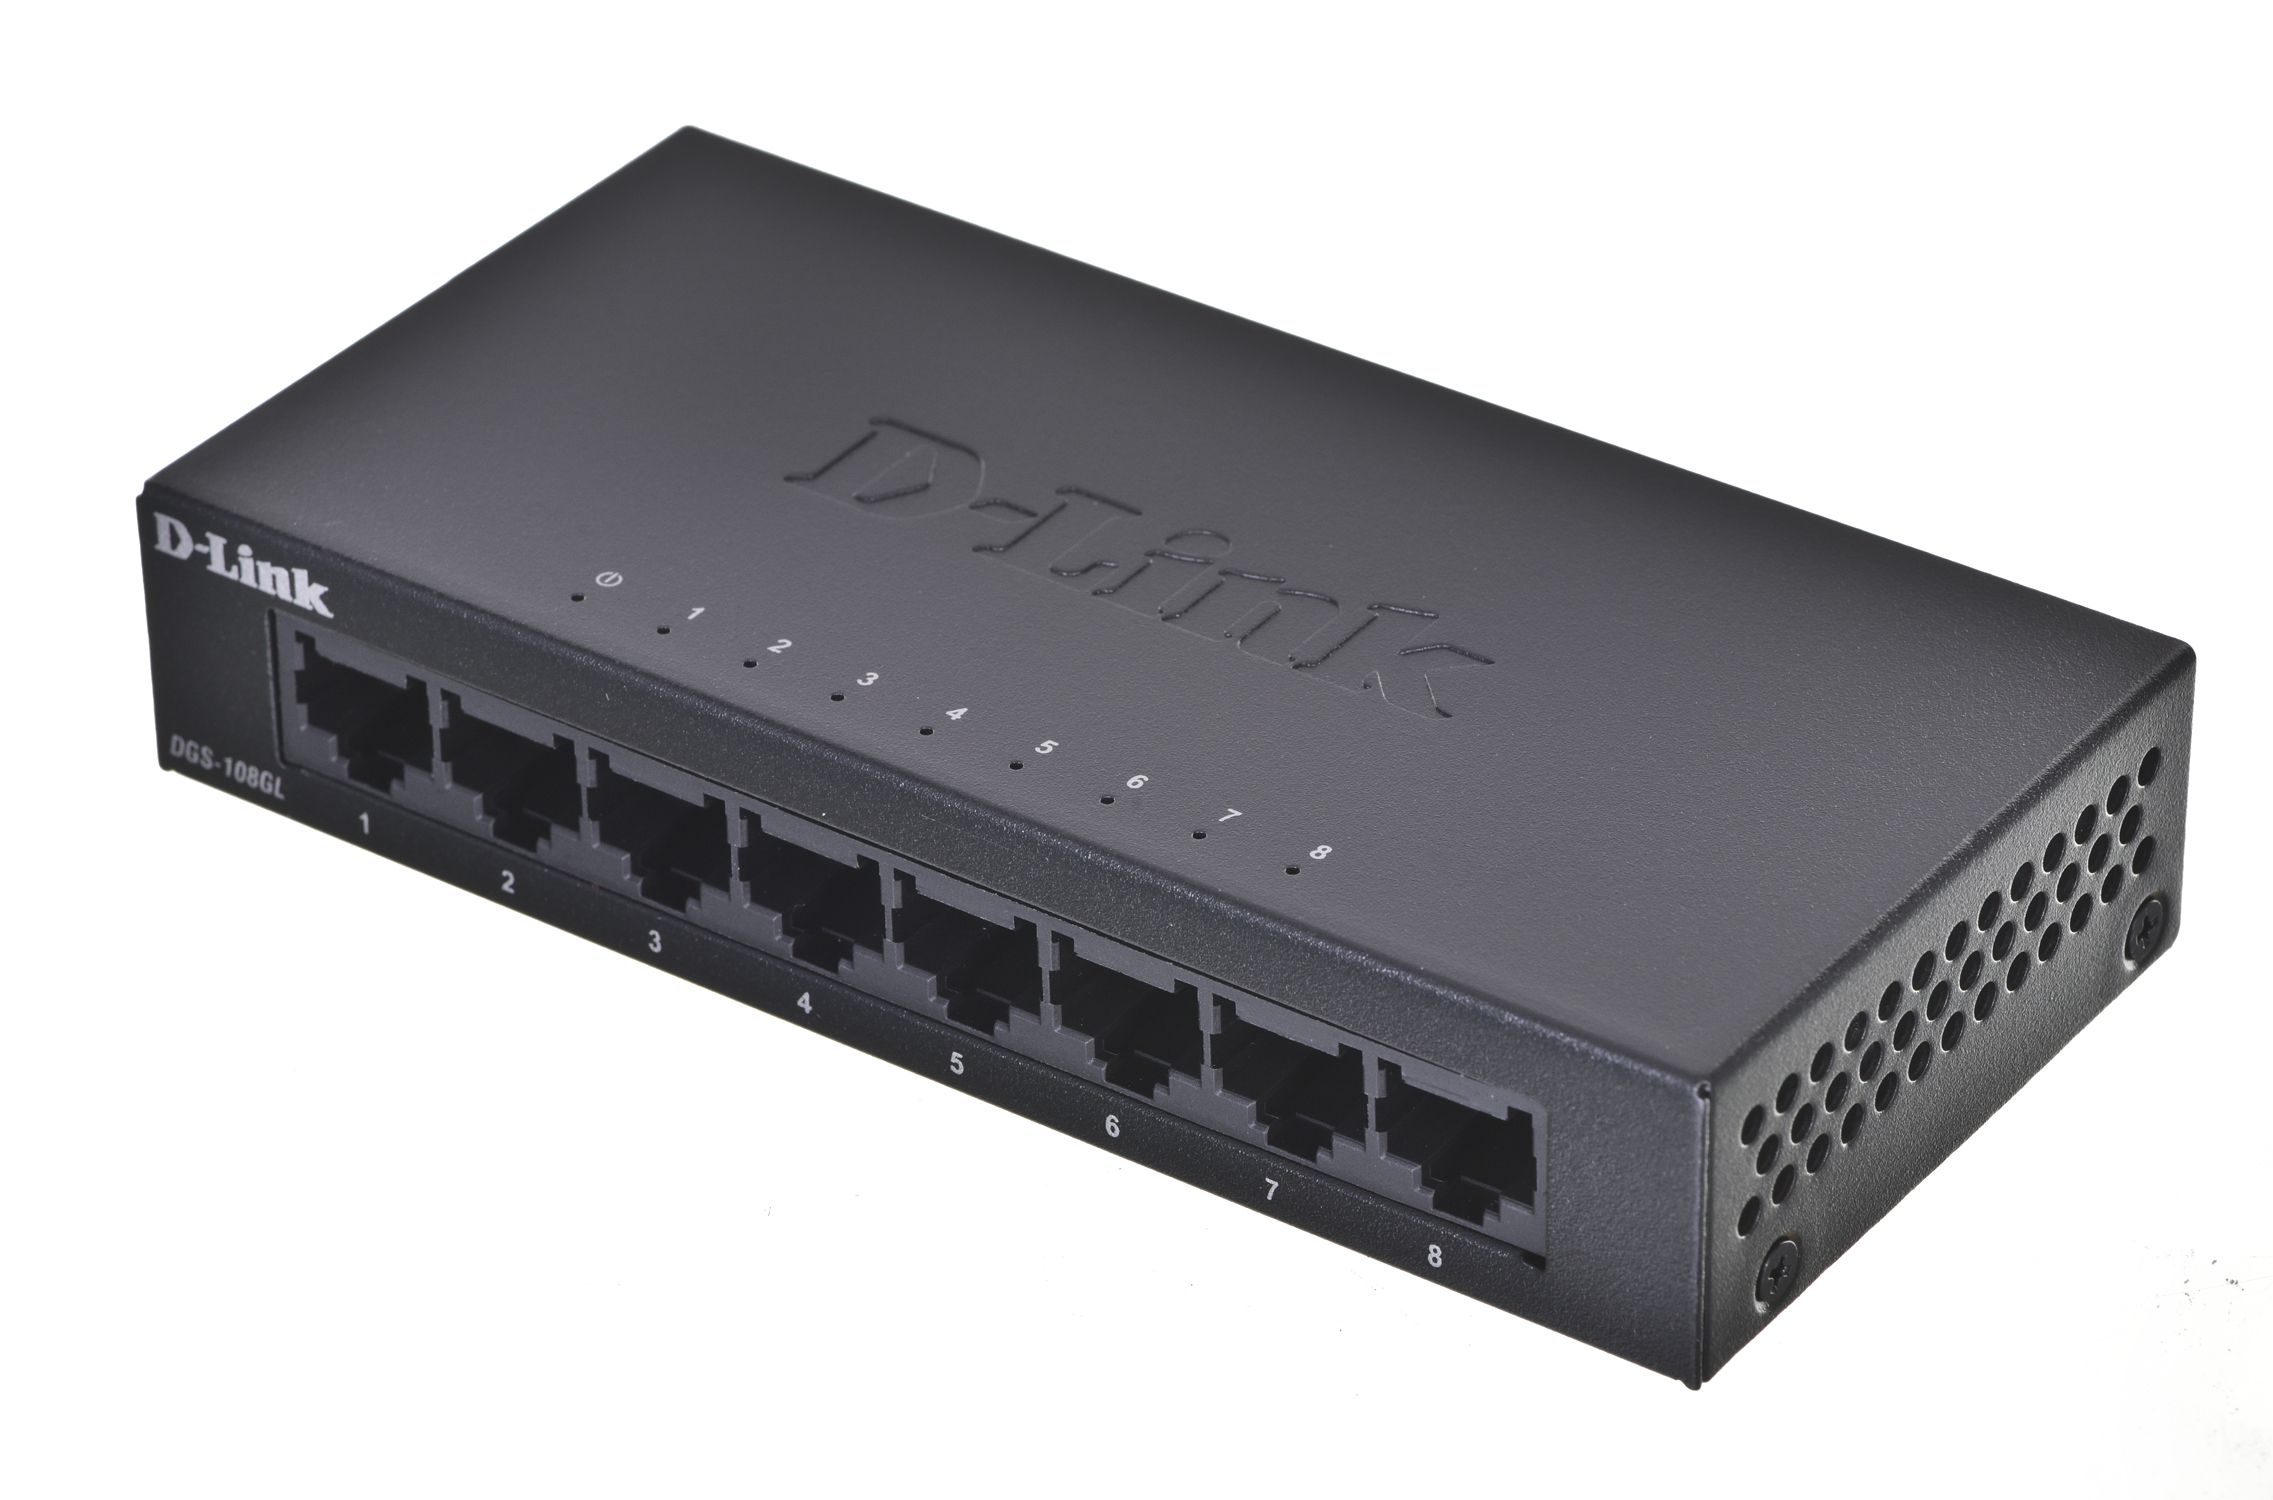 D-Link DGS-108GL Unmanaged Gigabit Ethernet (10/100/1000) Black_1